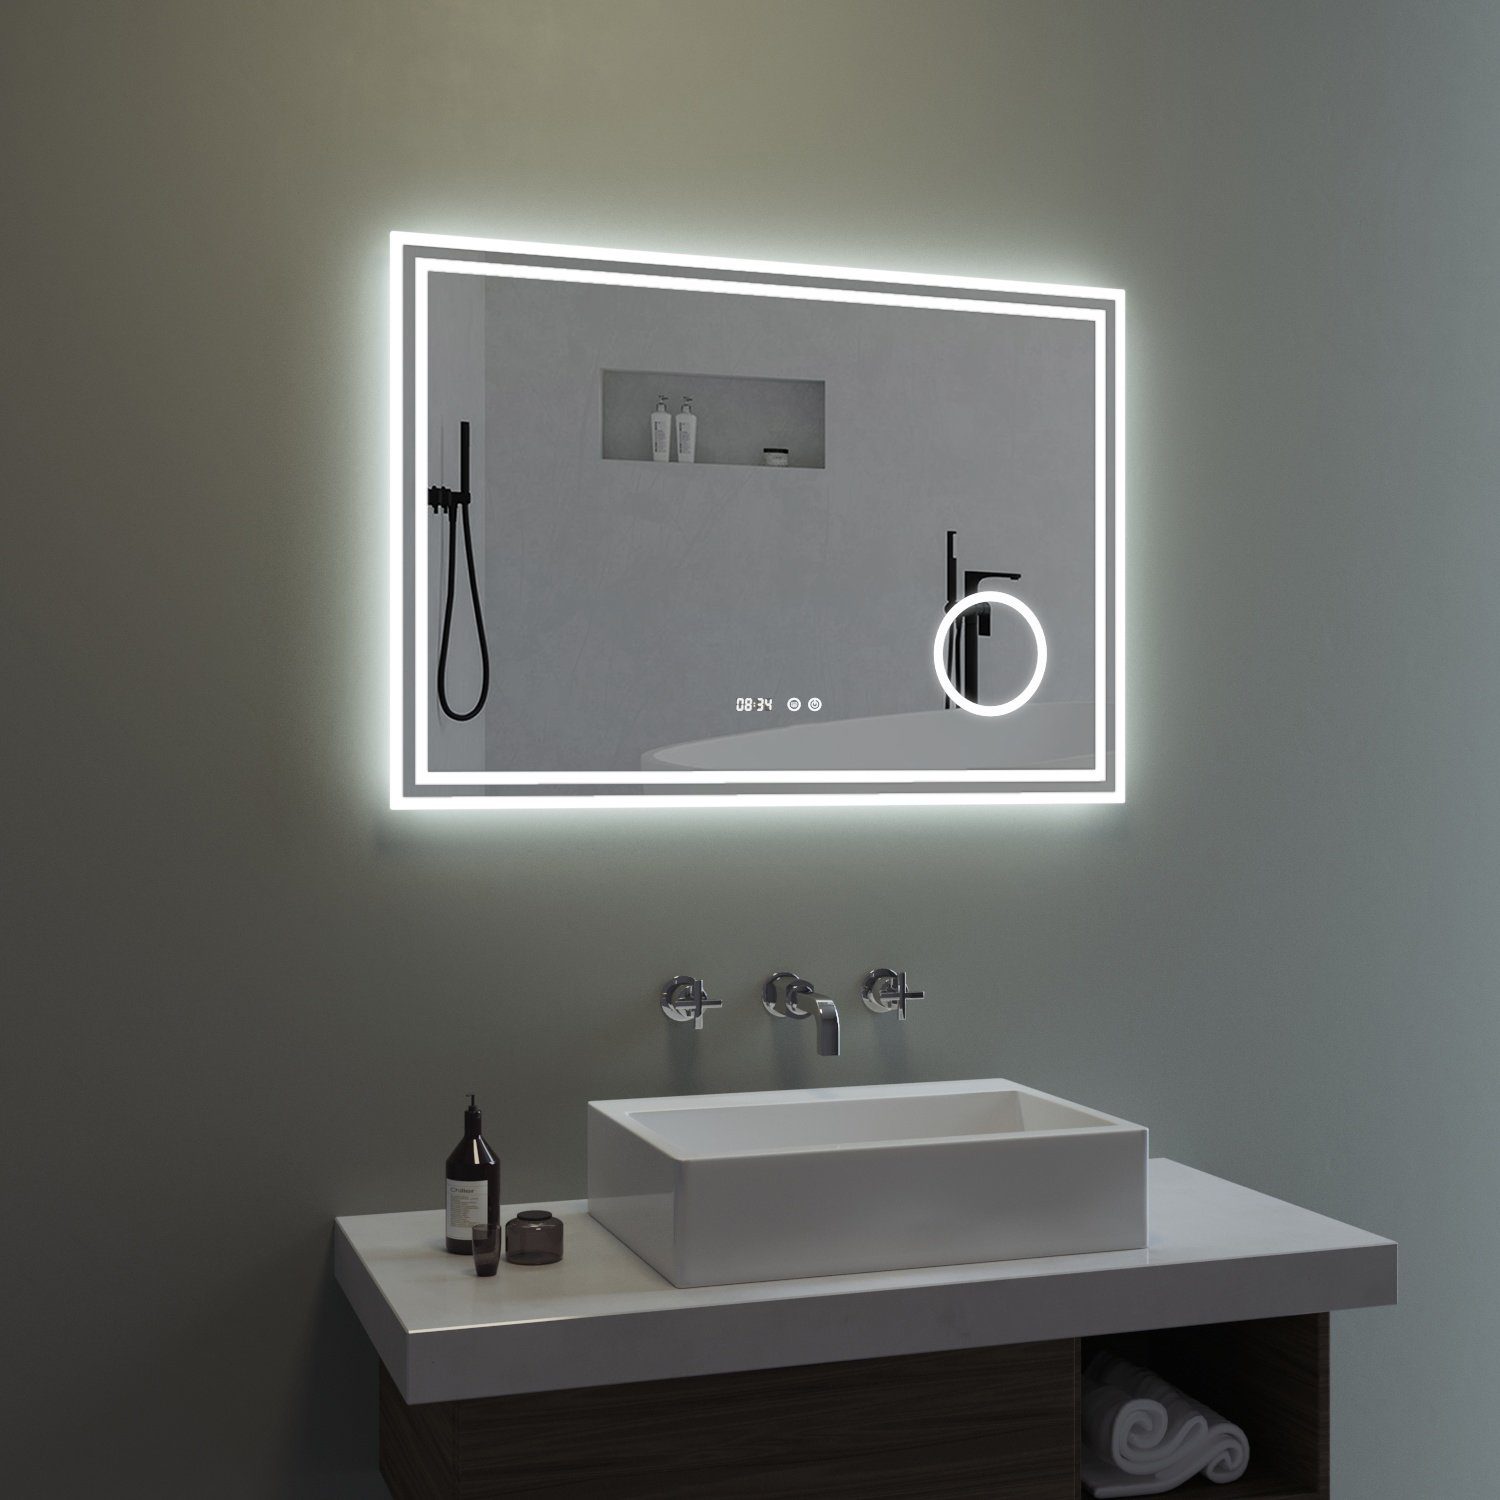 Lichtspiegel Badezimmerspiegel Wandspiegel IMPTS LED Bad Spiegel 50x70cm Badspiegel mit Beleuchtung Touchschalter Antibeschlag Dimmbar neutralweiss IP44